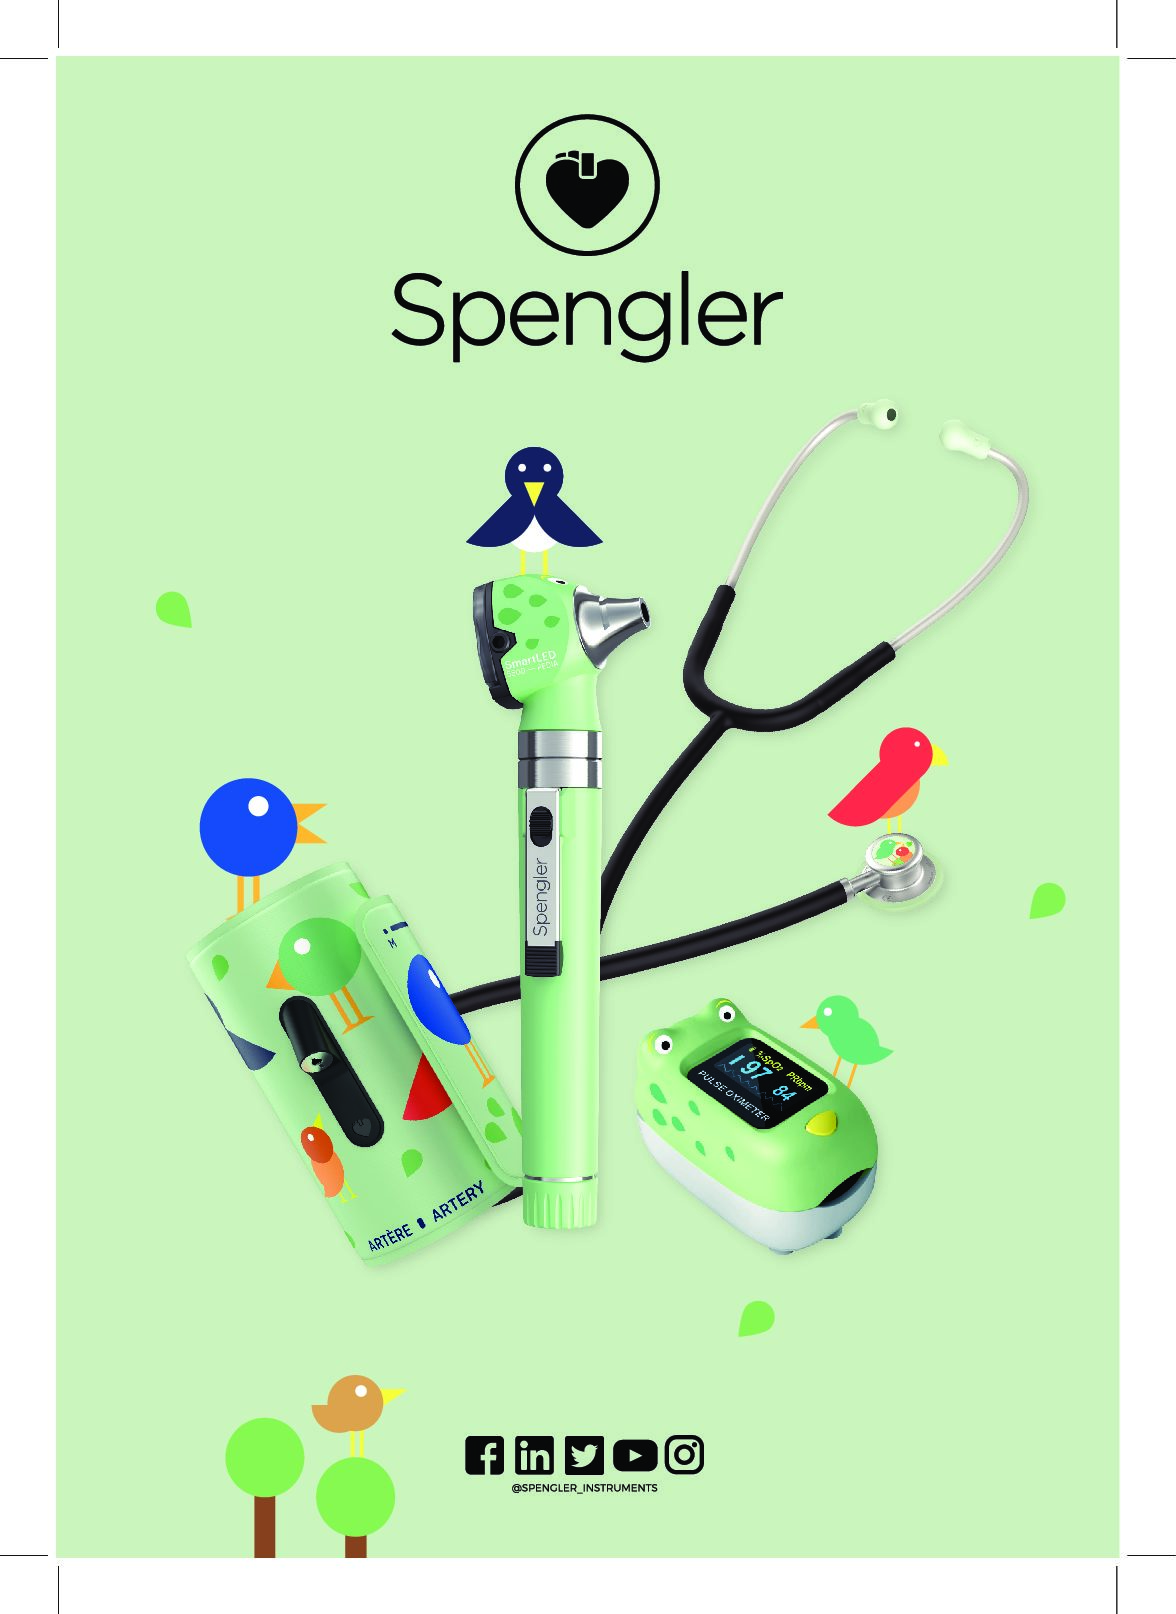 Spengler Oxyfrog Oxymètre de pouls pour enfant - Saturation oxygène